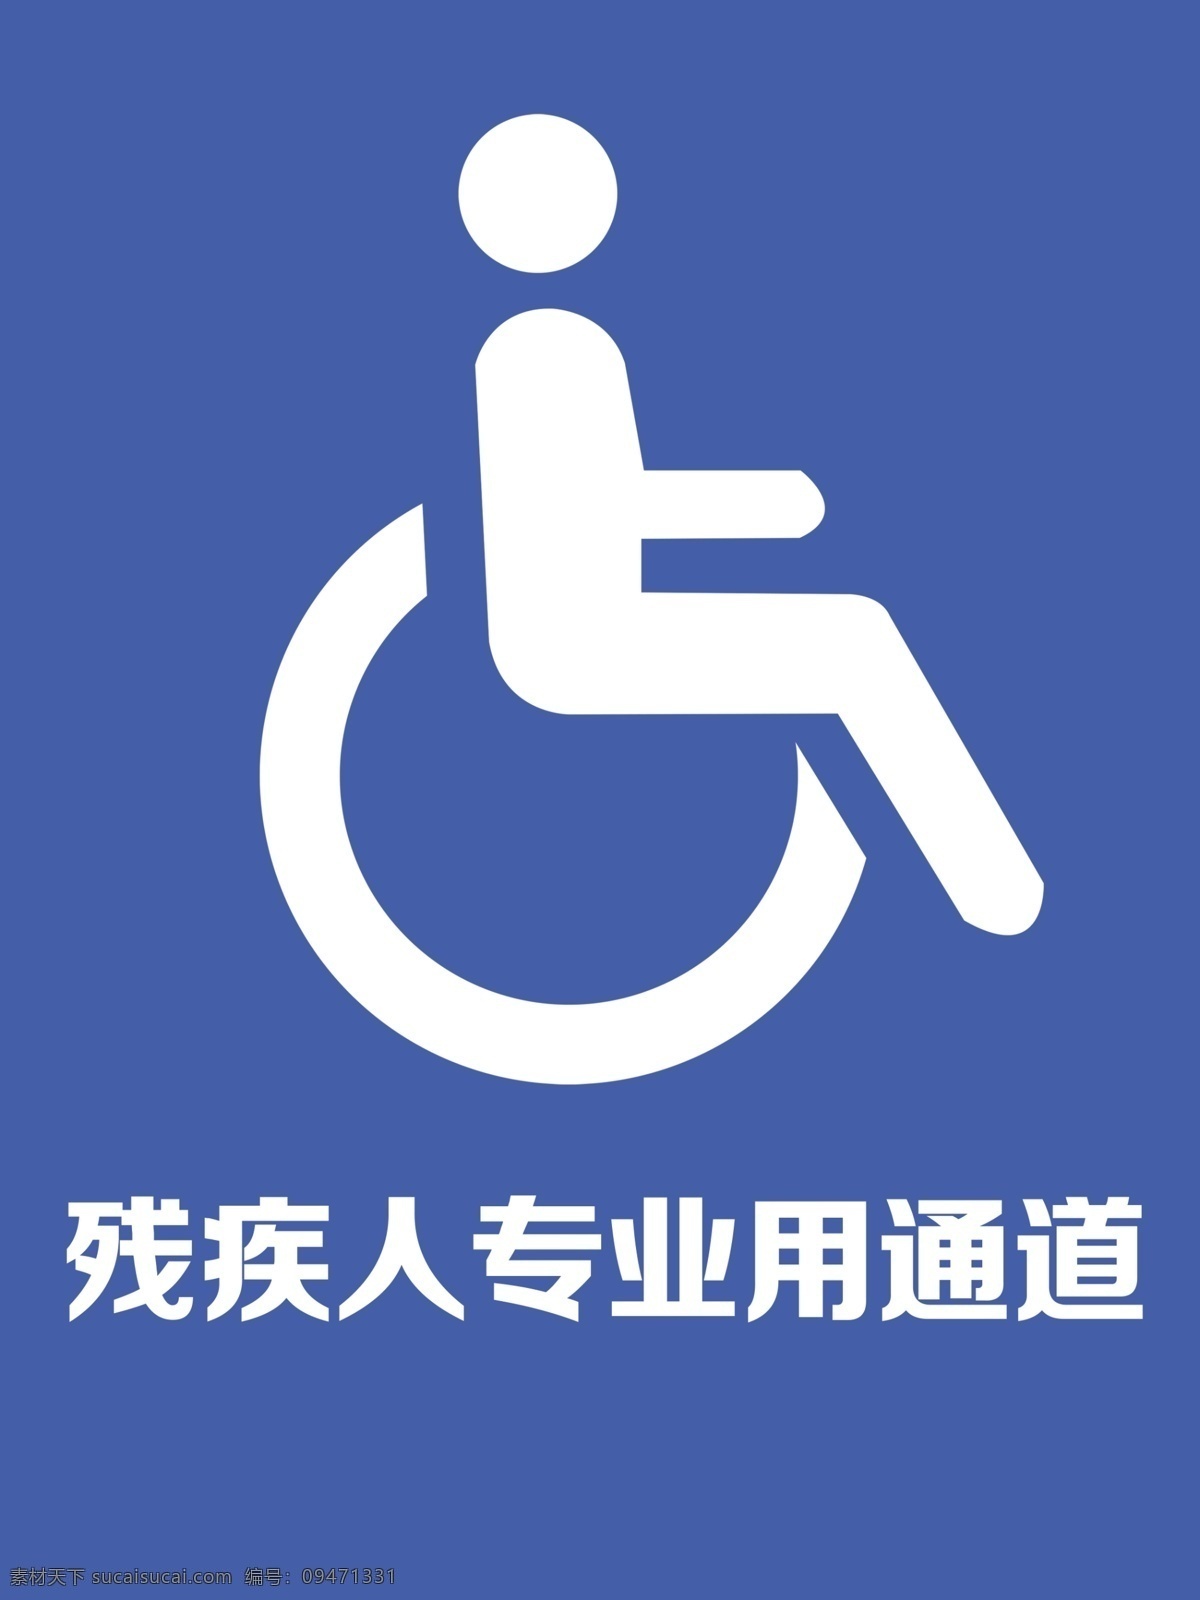 残疾人 专用 通道 标志 纯色 矢量图 tif分层